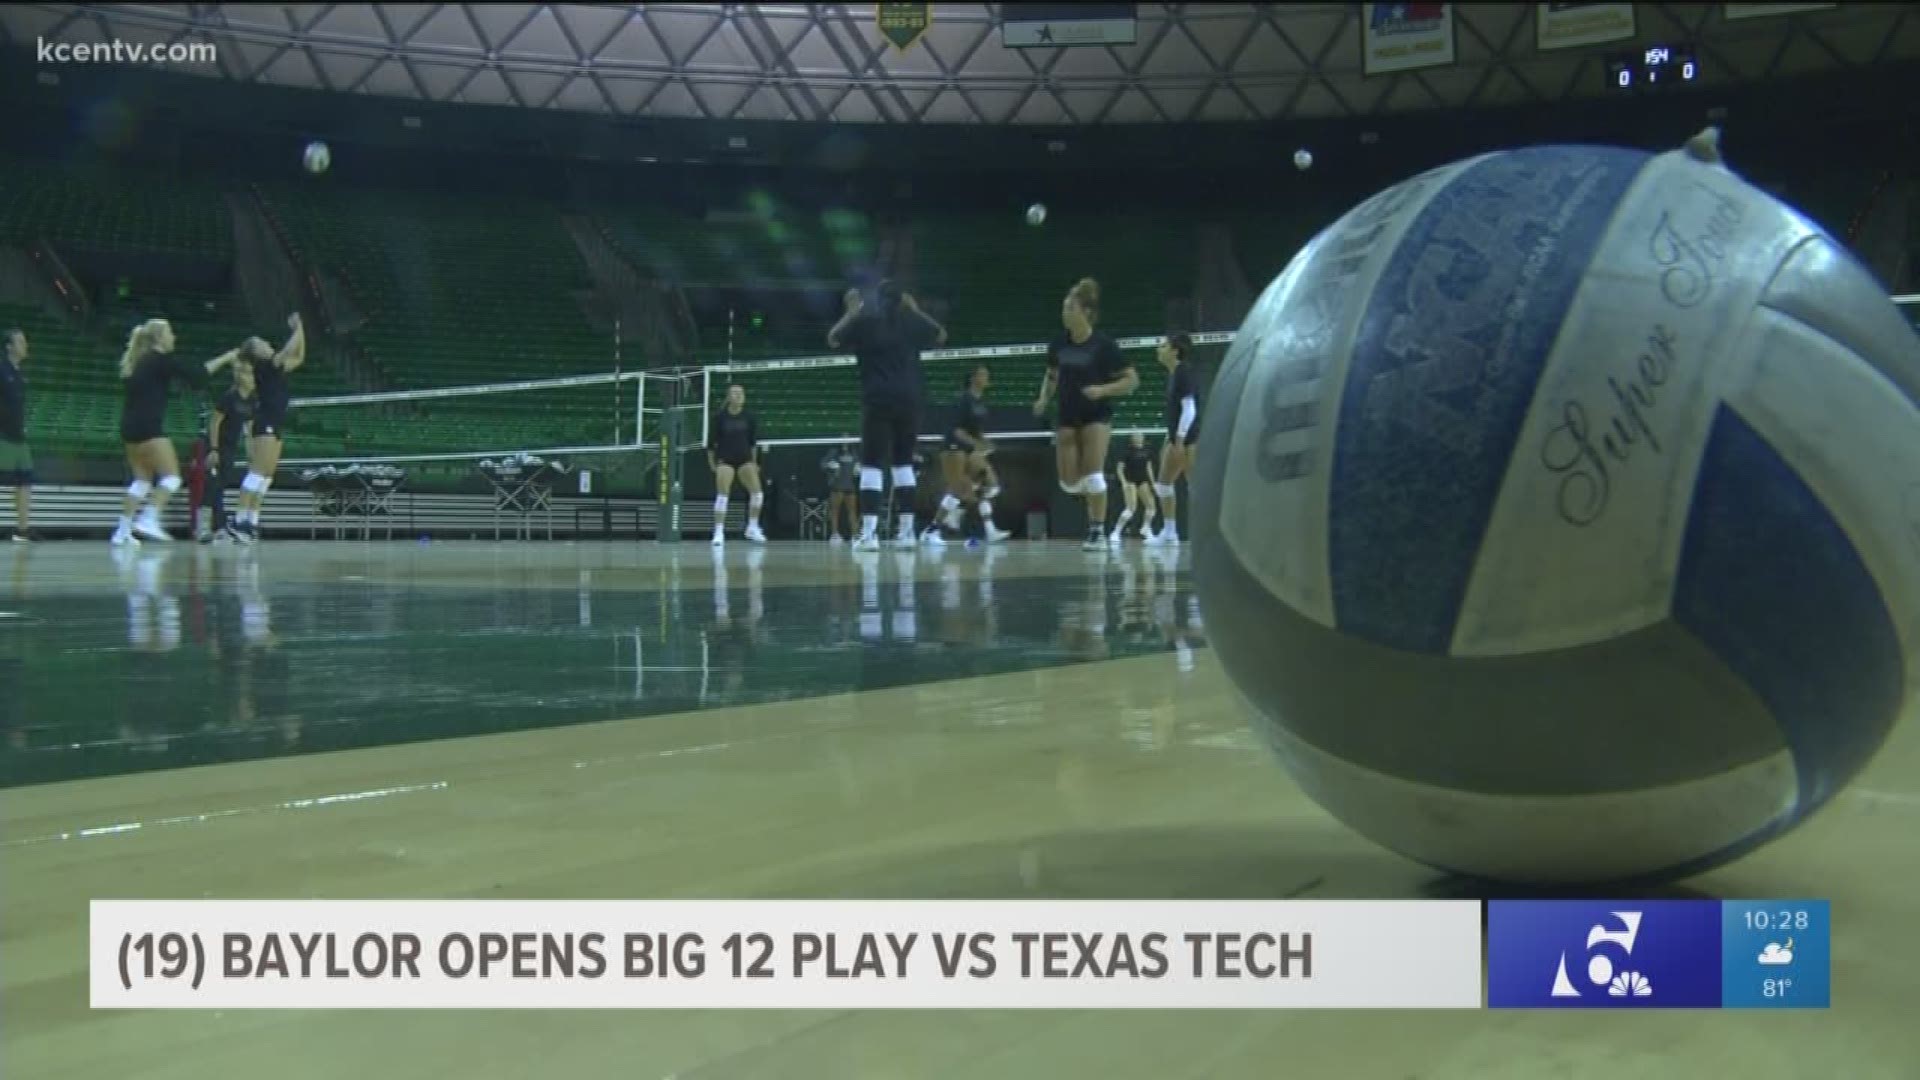 (19) Baylor Opens Big 12 Play vs Texas Tech on Wednesday